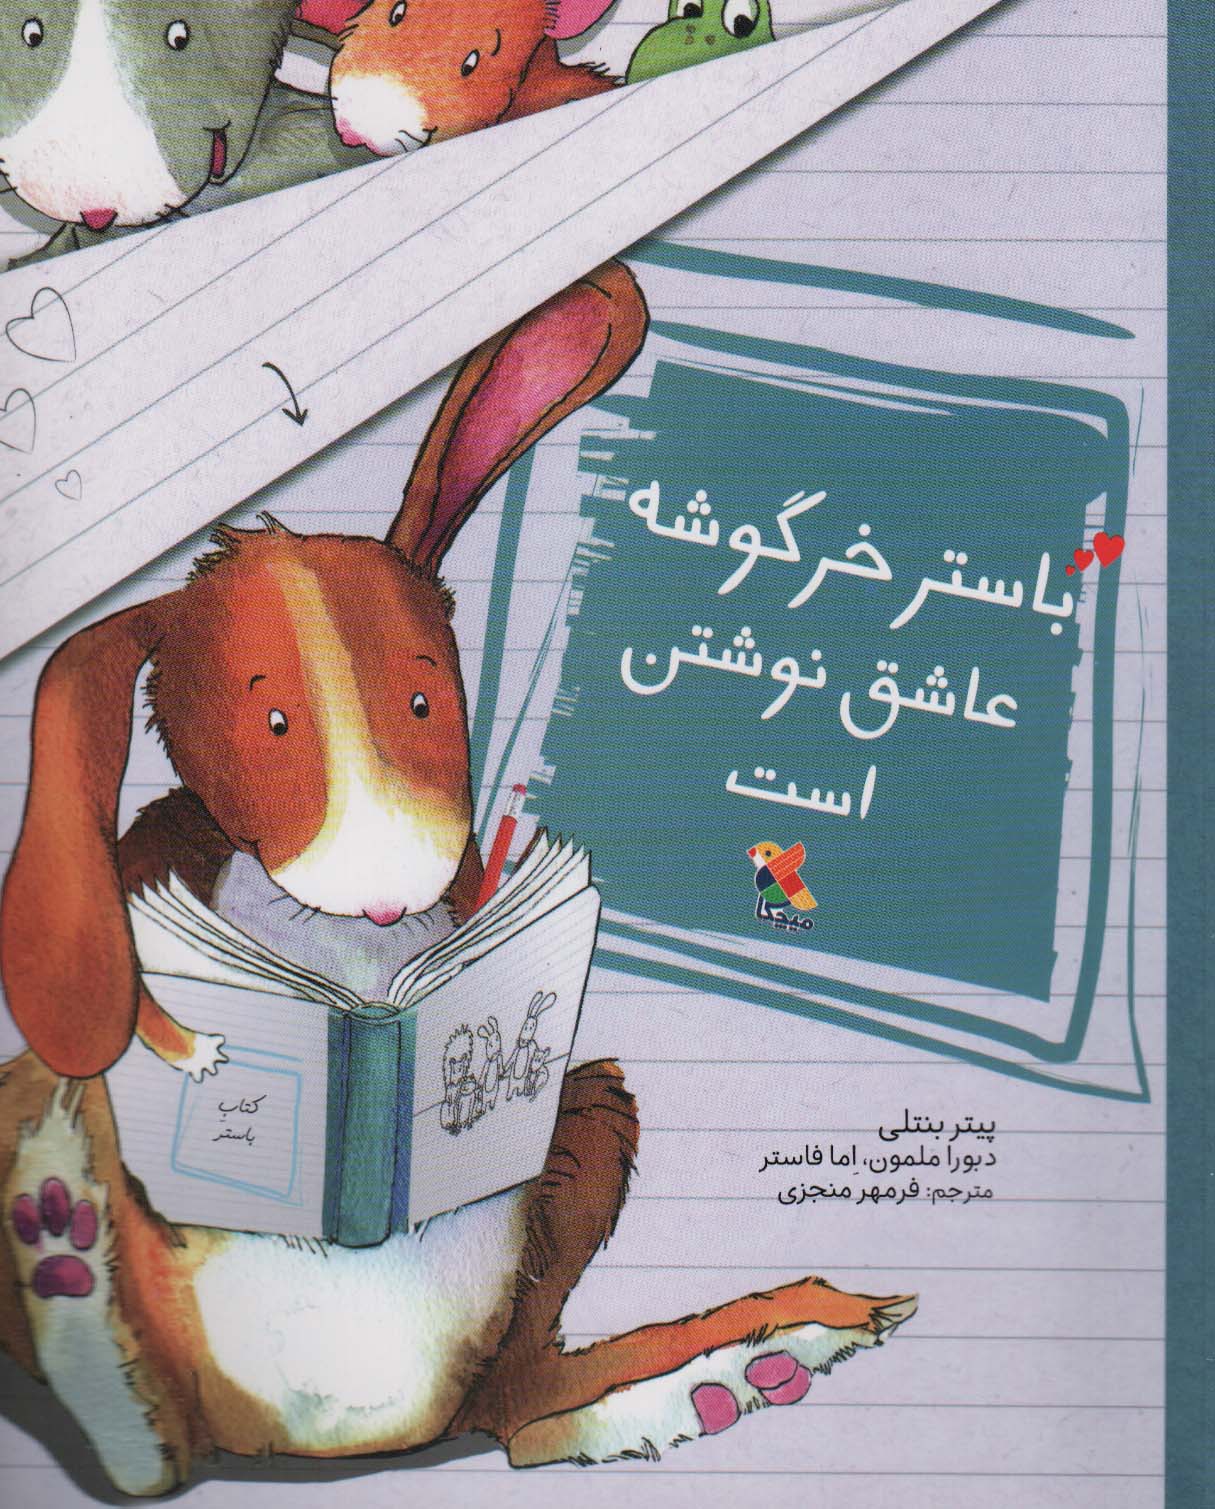  کتاب باستر خرگوشه عاشق نوشتن است